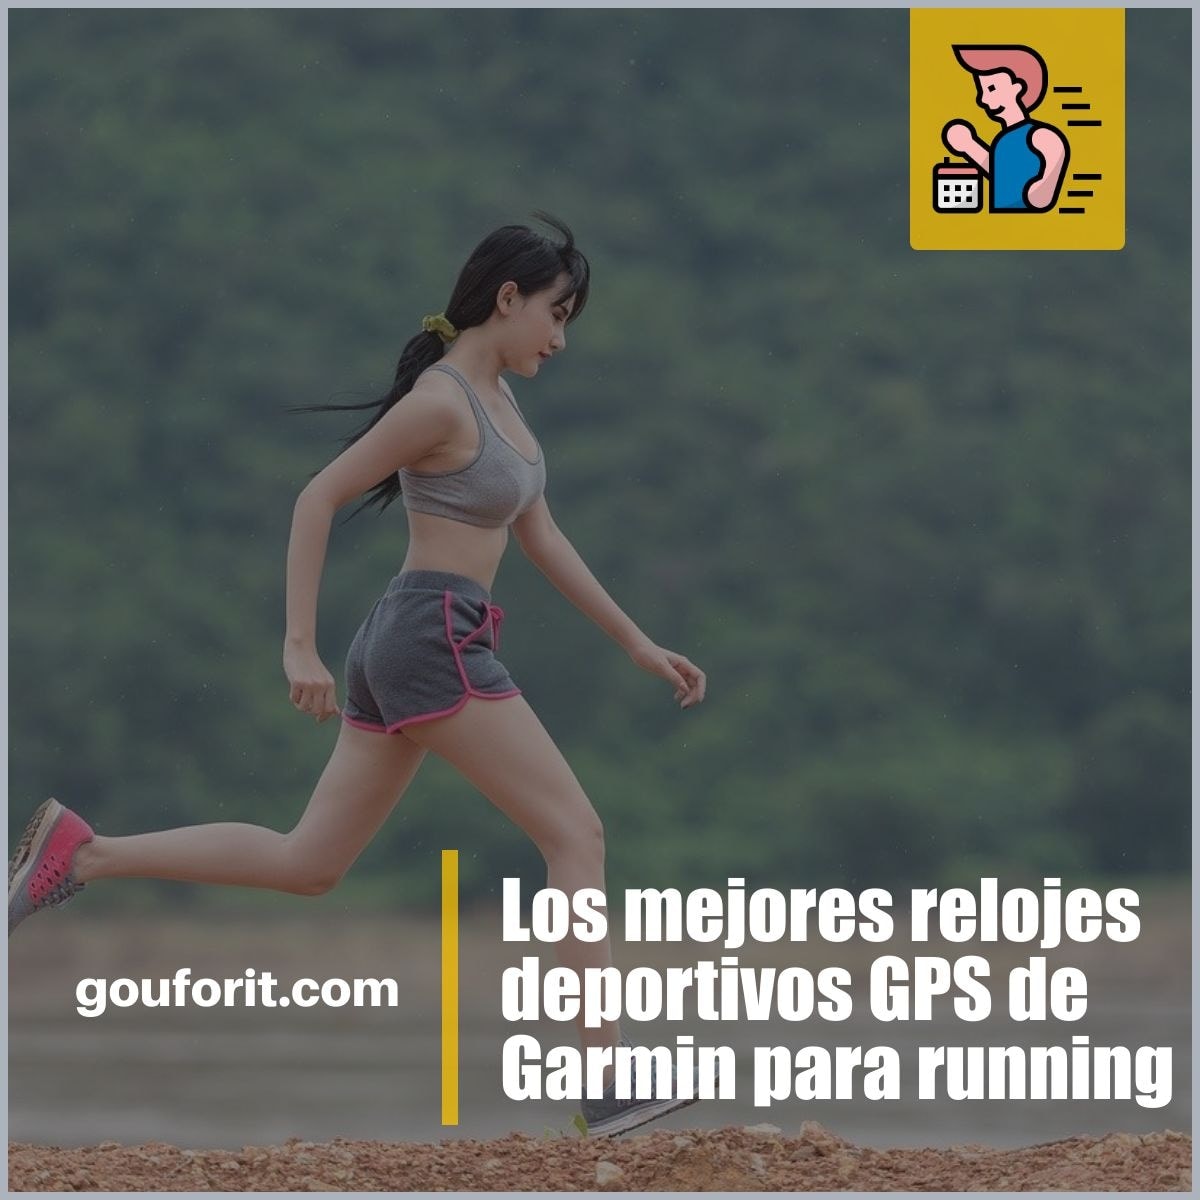 Los mejores relojes deportivos GPS de Garmin si te tomas en serio el running